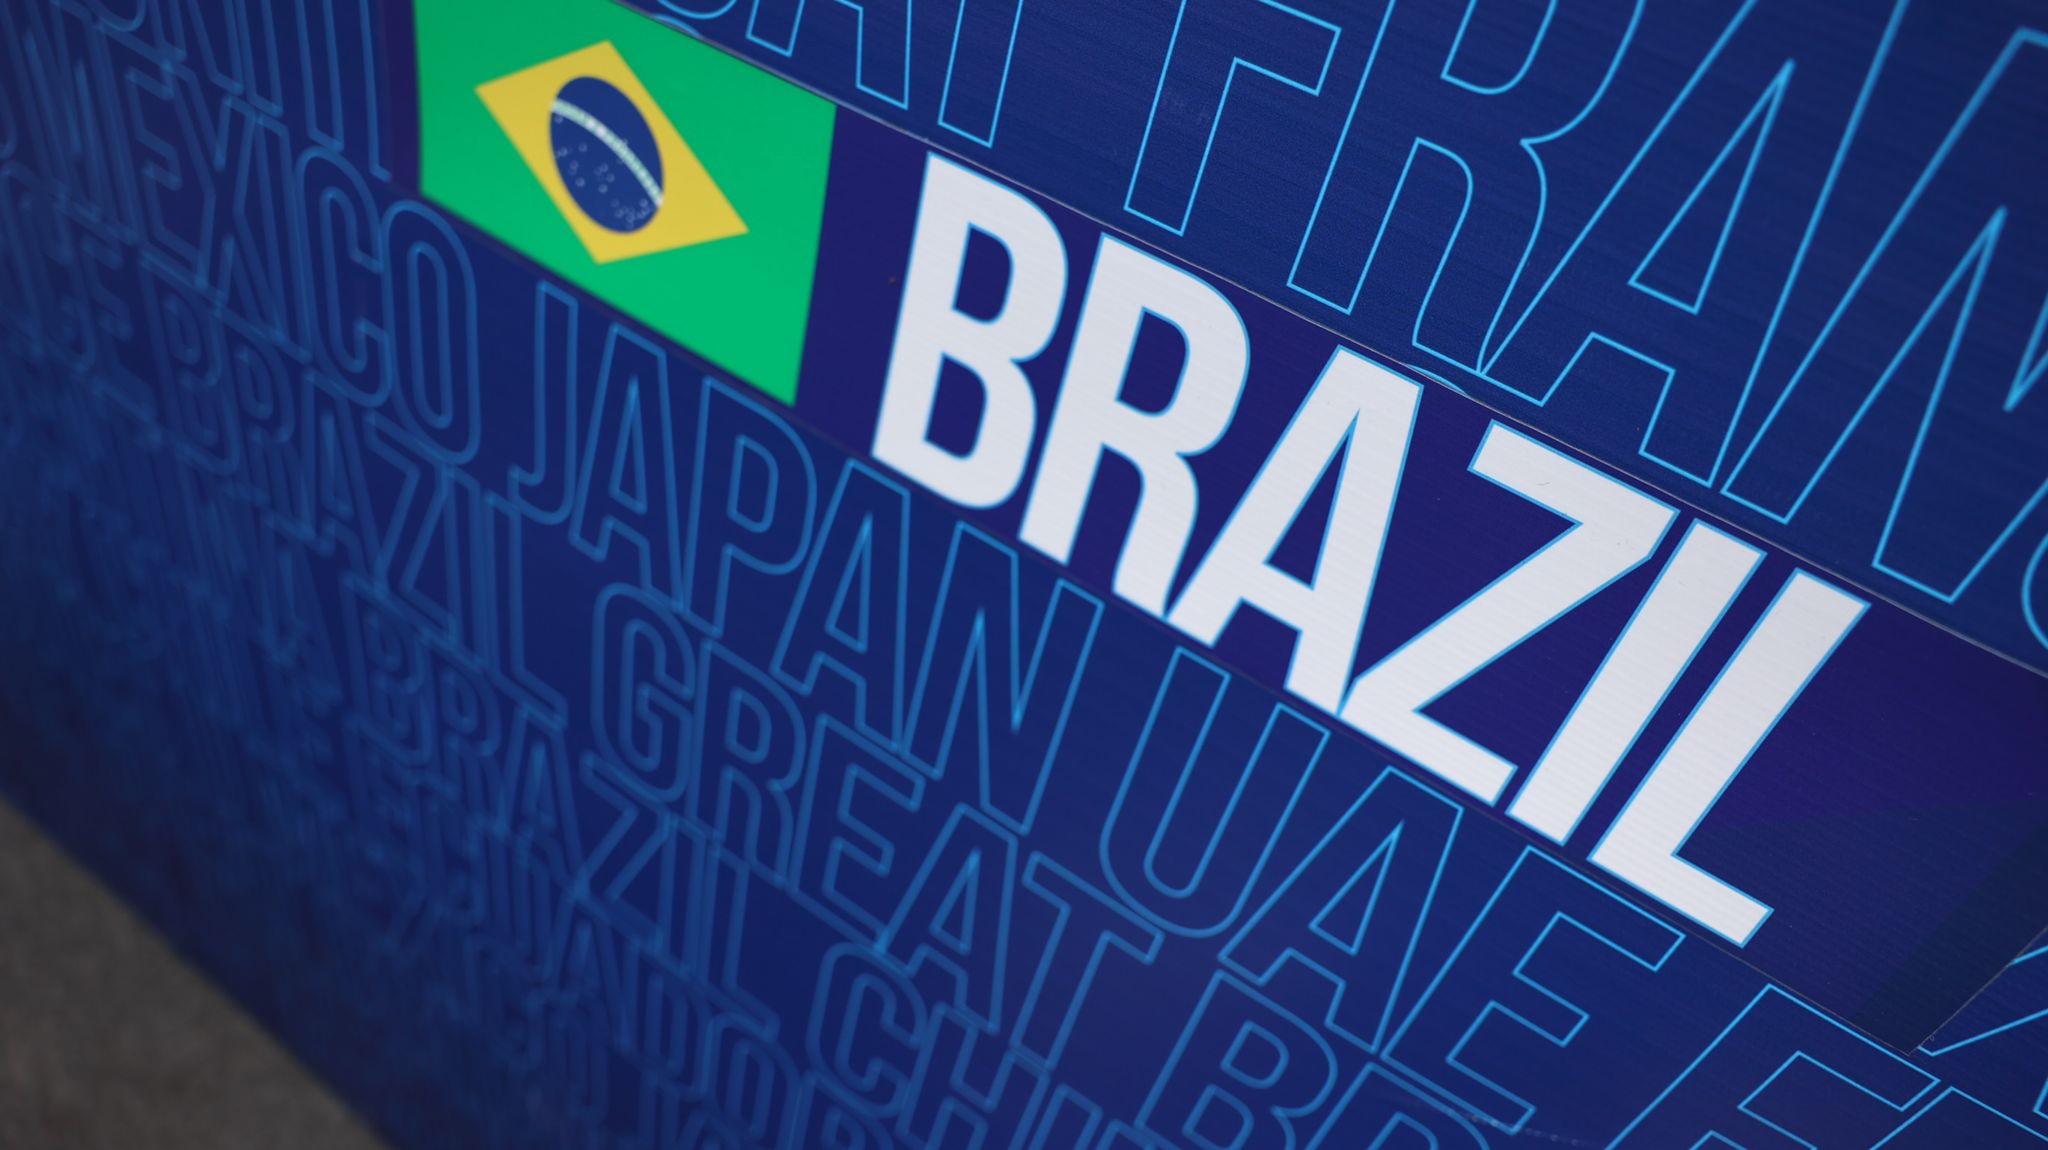 Jalkapallon MM-kisat 2022 – Brasilia päättyy huikeaan